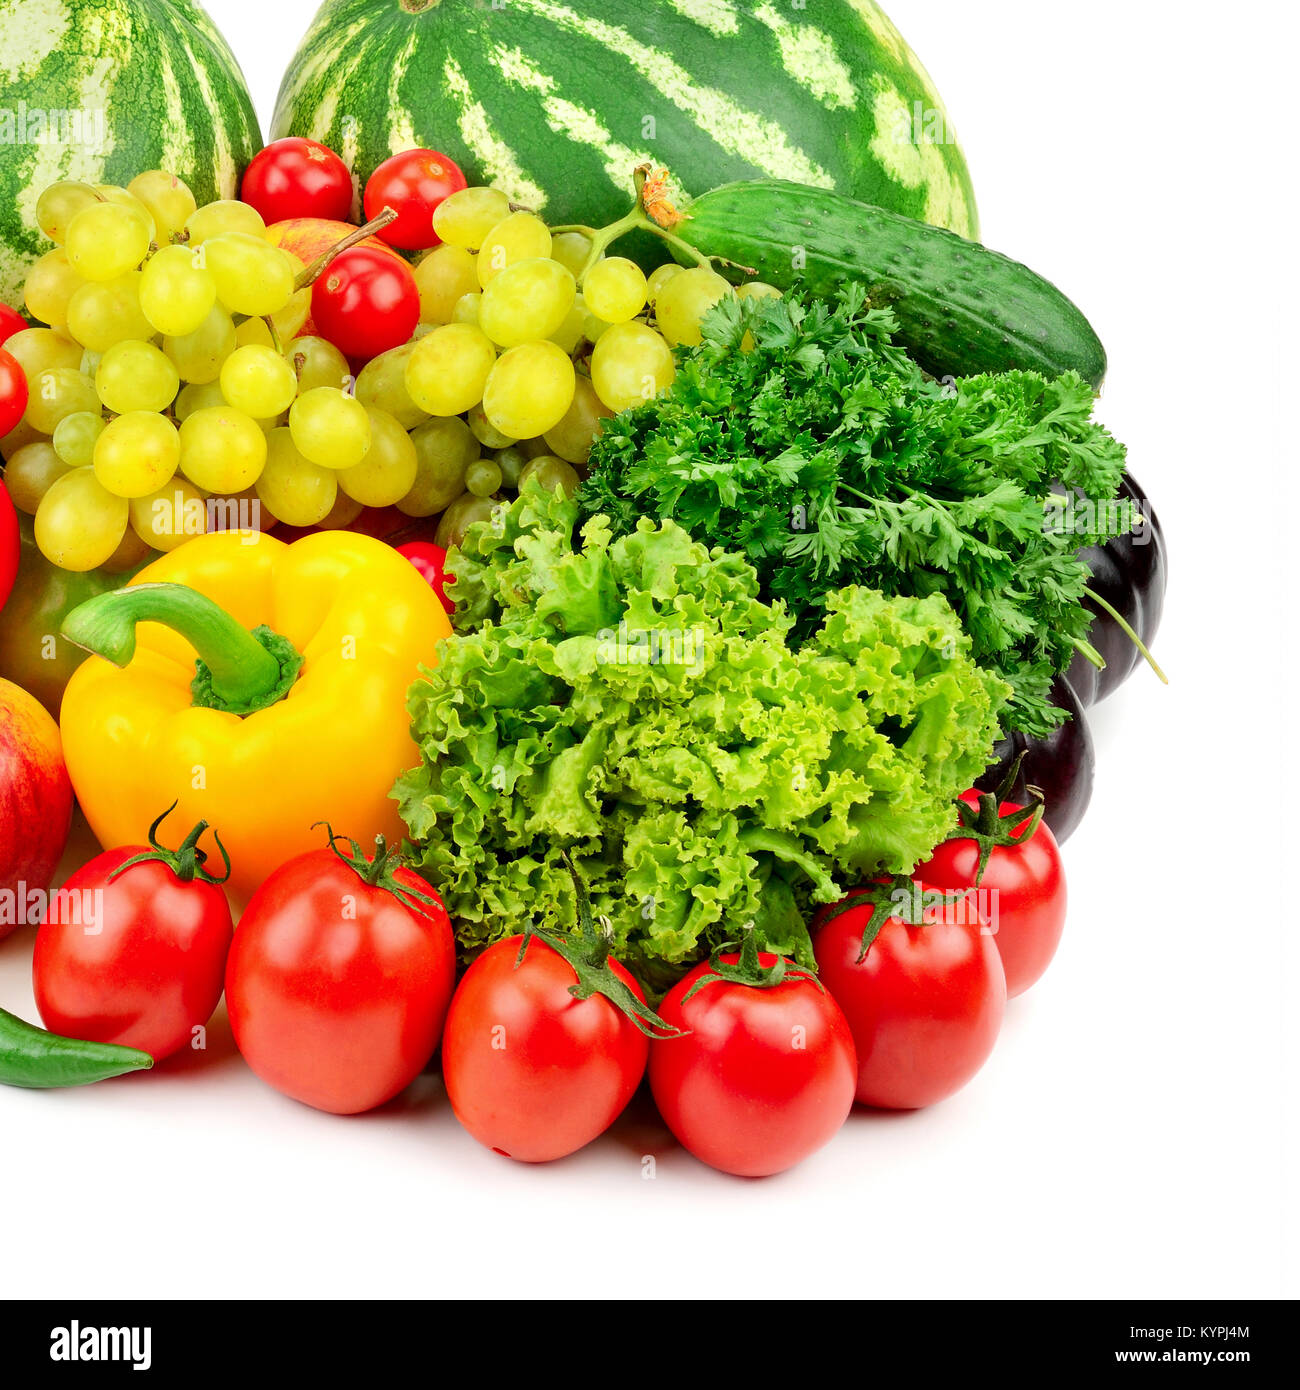 Obst und Gemüse auf Weiß isoliert. Nützliche Produkte für die Gesundheit. Stockfoto